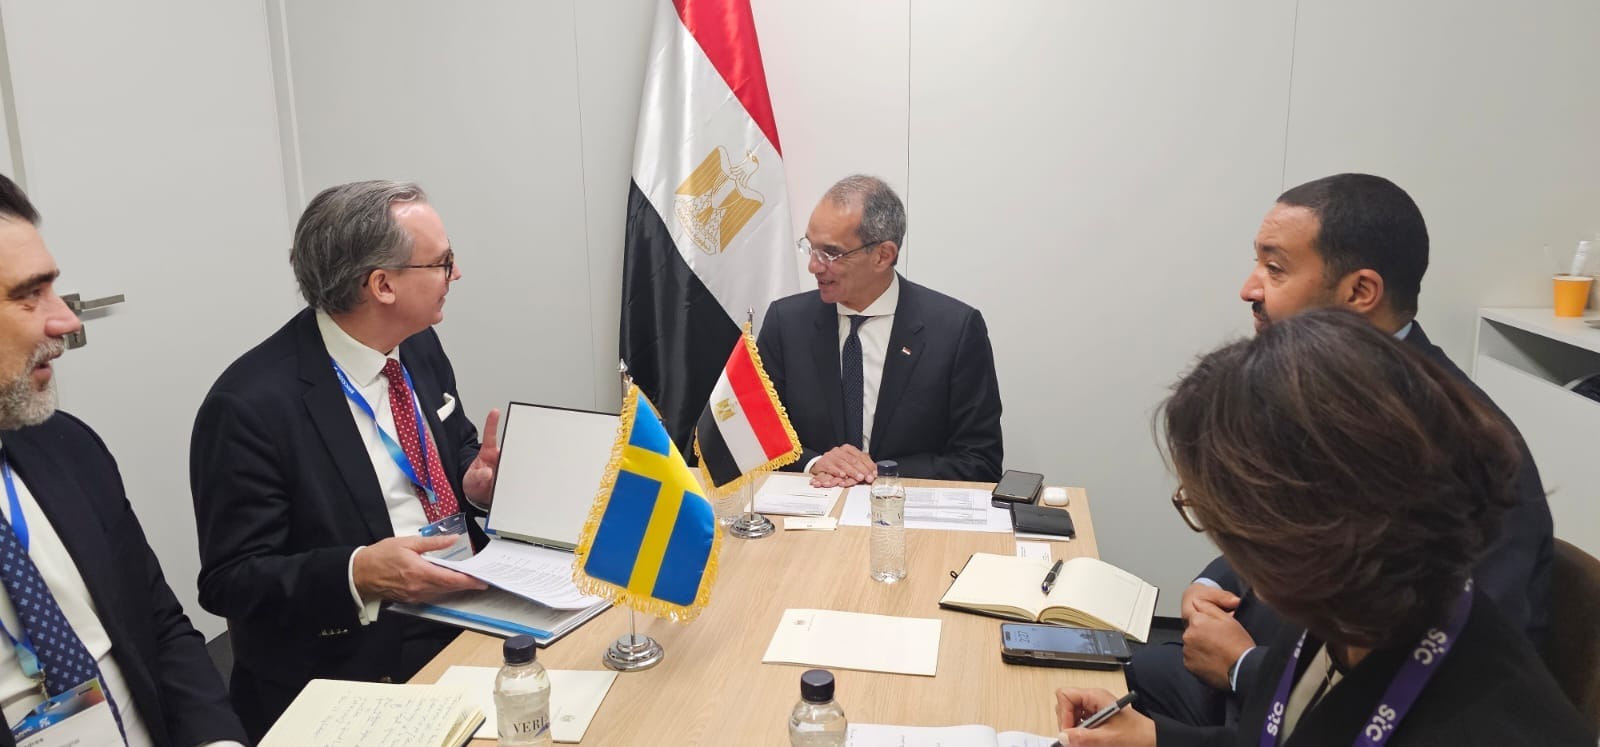 وزير الاتصالات يبحث مع «تيجاس» تصنيع معدات الاتصالات في مصر وبناء القدرات الرقمية